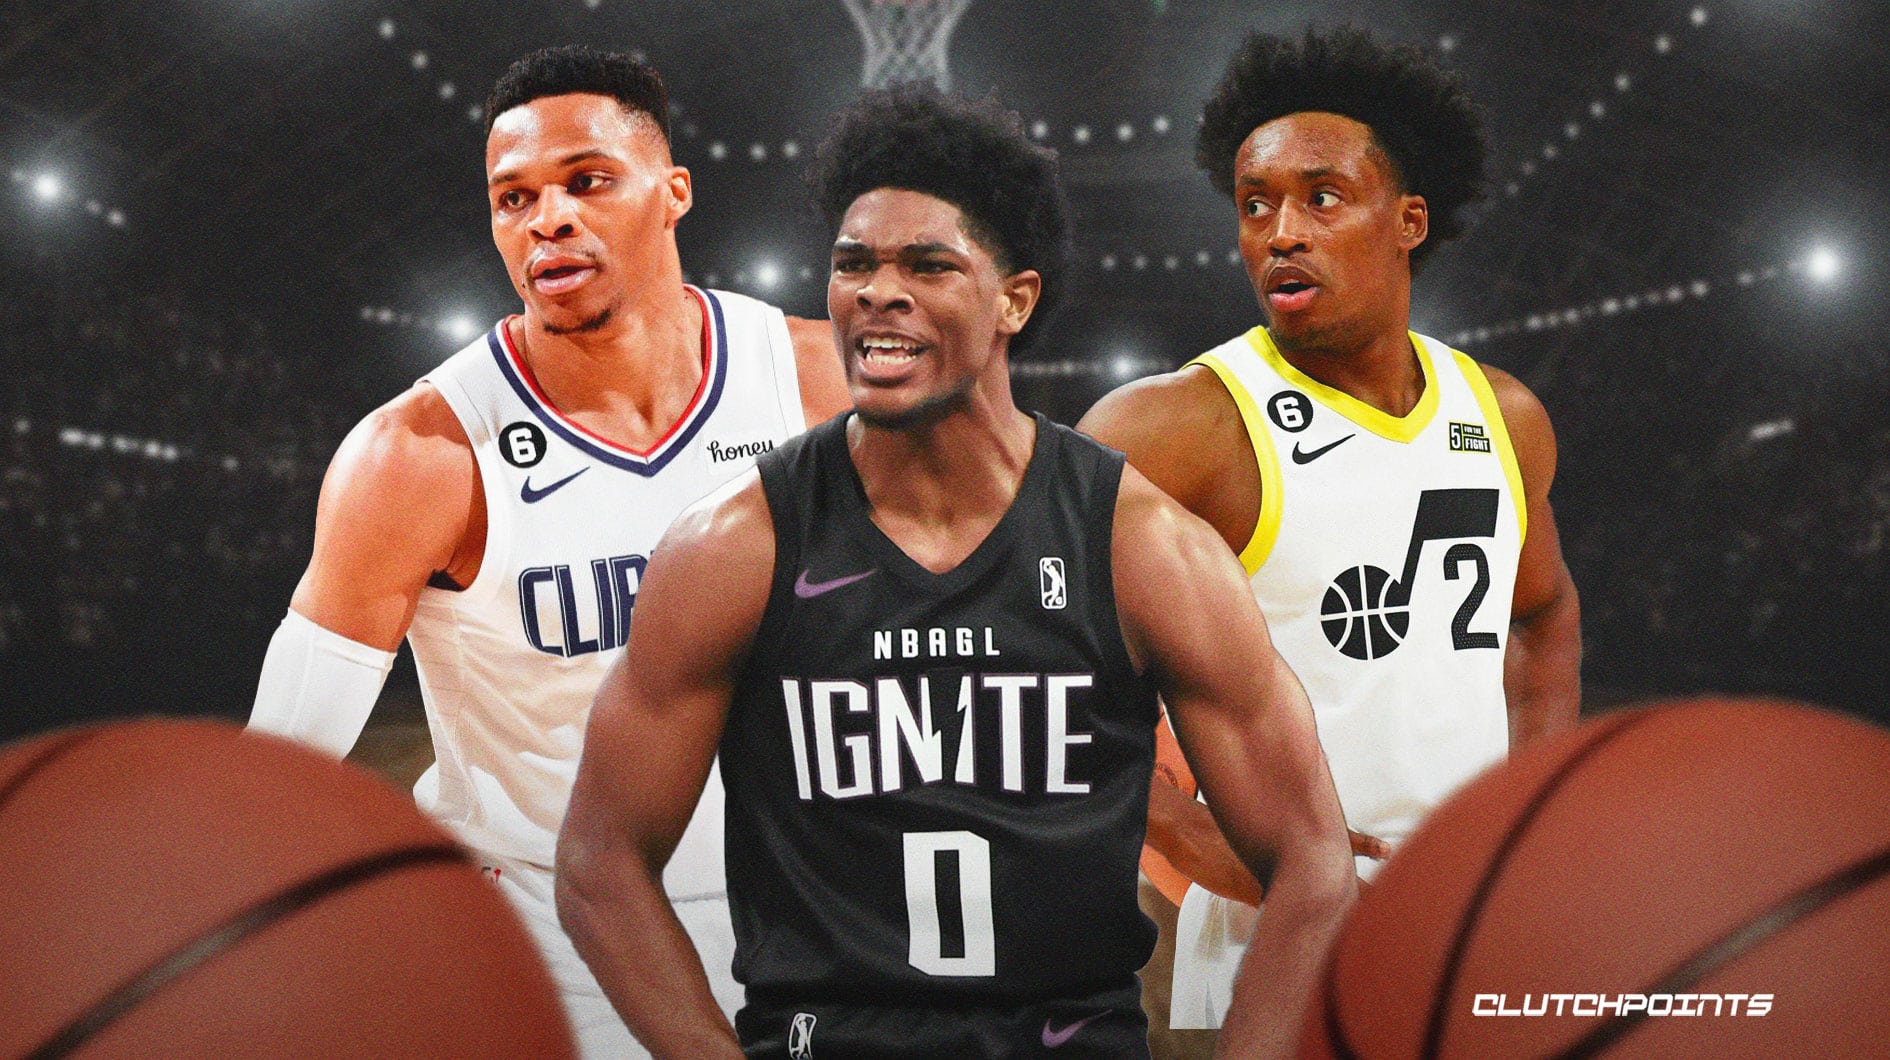 Comparaciones de jugadores profesionales para prospectos del Draft de la NBA
 CINEINFO12